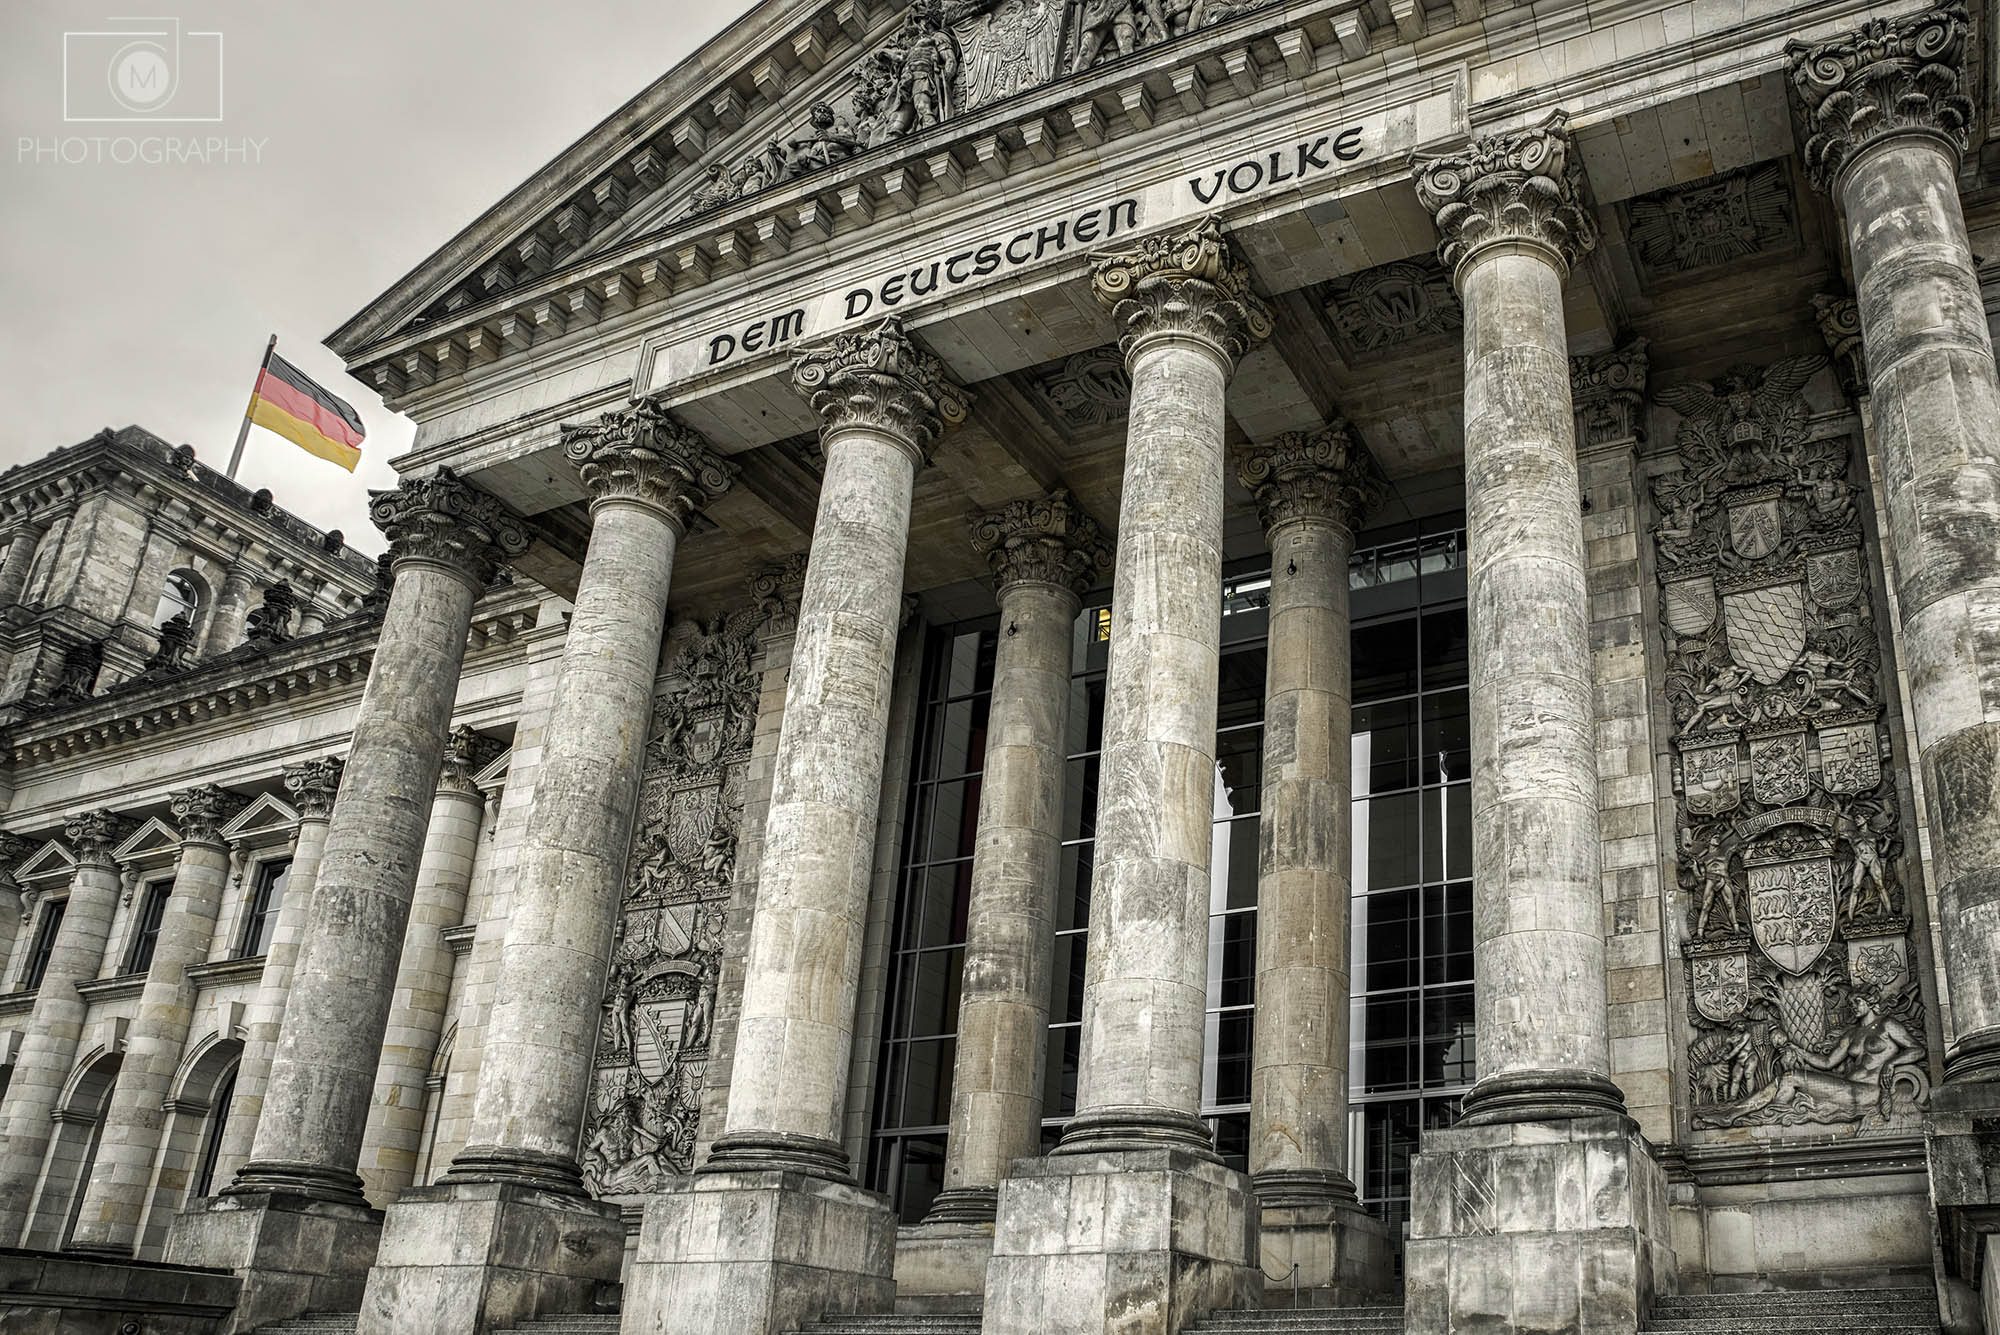 Reichstag - budova Ríšskeho snemu v Berlíne